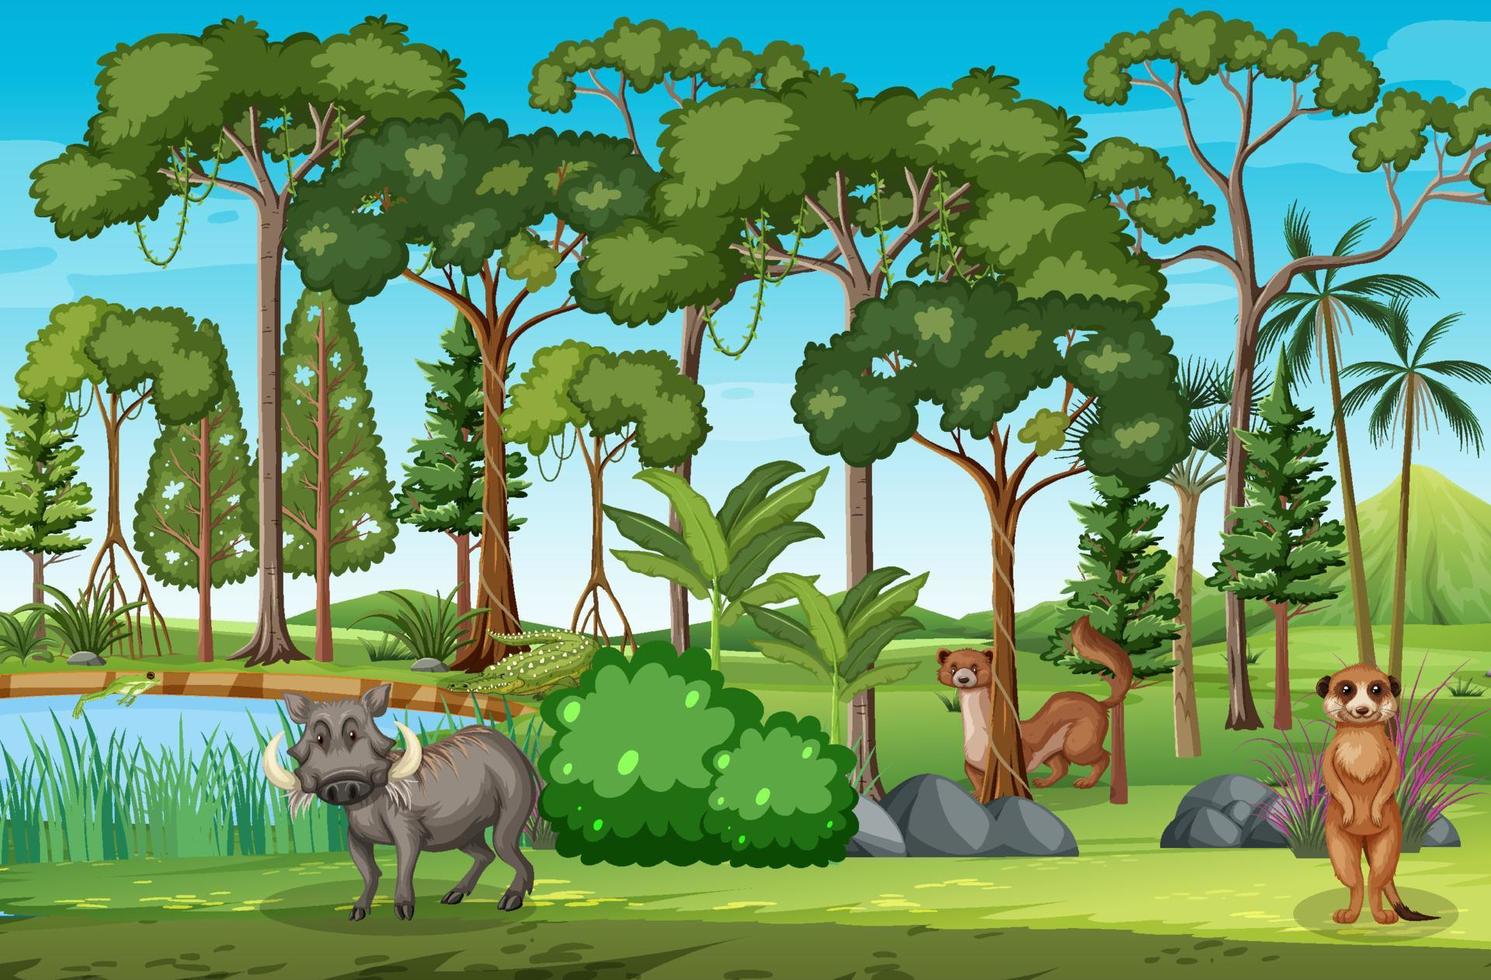 scène de forêt avec divers animaux sauvages vecteur